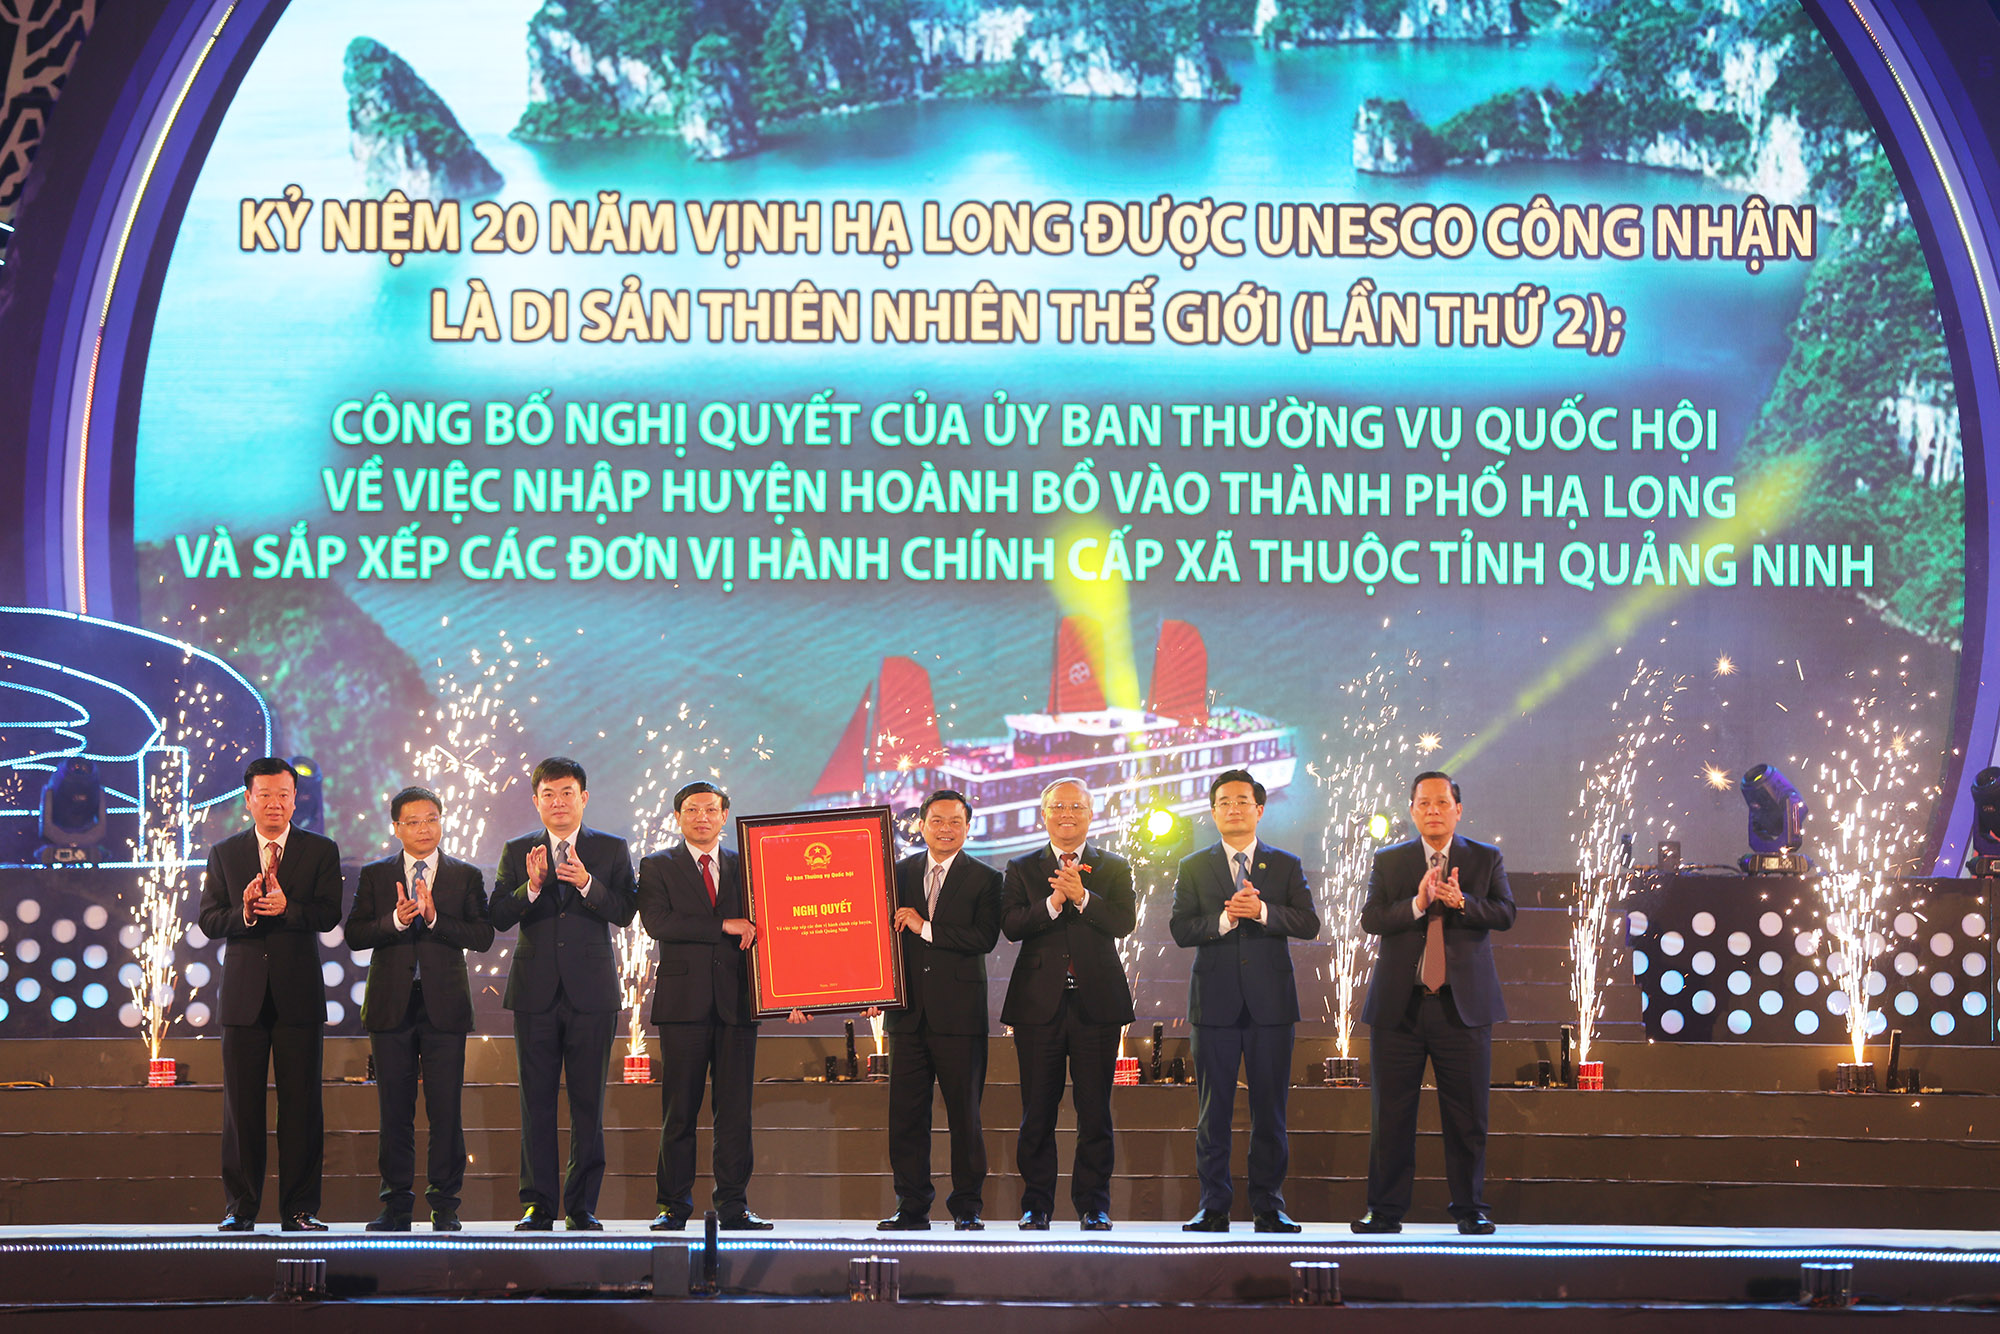 Quảng Ninh đón nhận Nghị quyết 837 của Ủy ban Thường vụ Quốc hội về việc sáp nhập huyện Hoành Bồ vào TP Hạ Long và sắp xếp các đơn vị hành chính cấp xã thuộc tỉnh Quảng Ninh